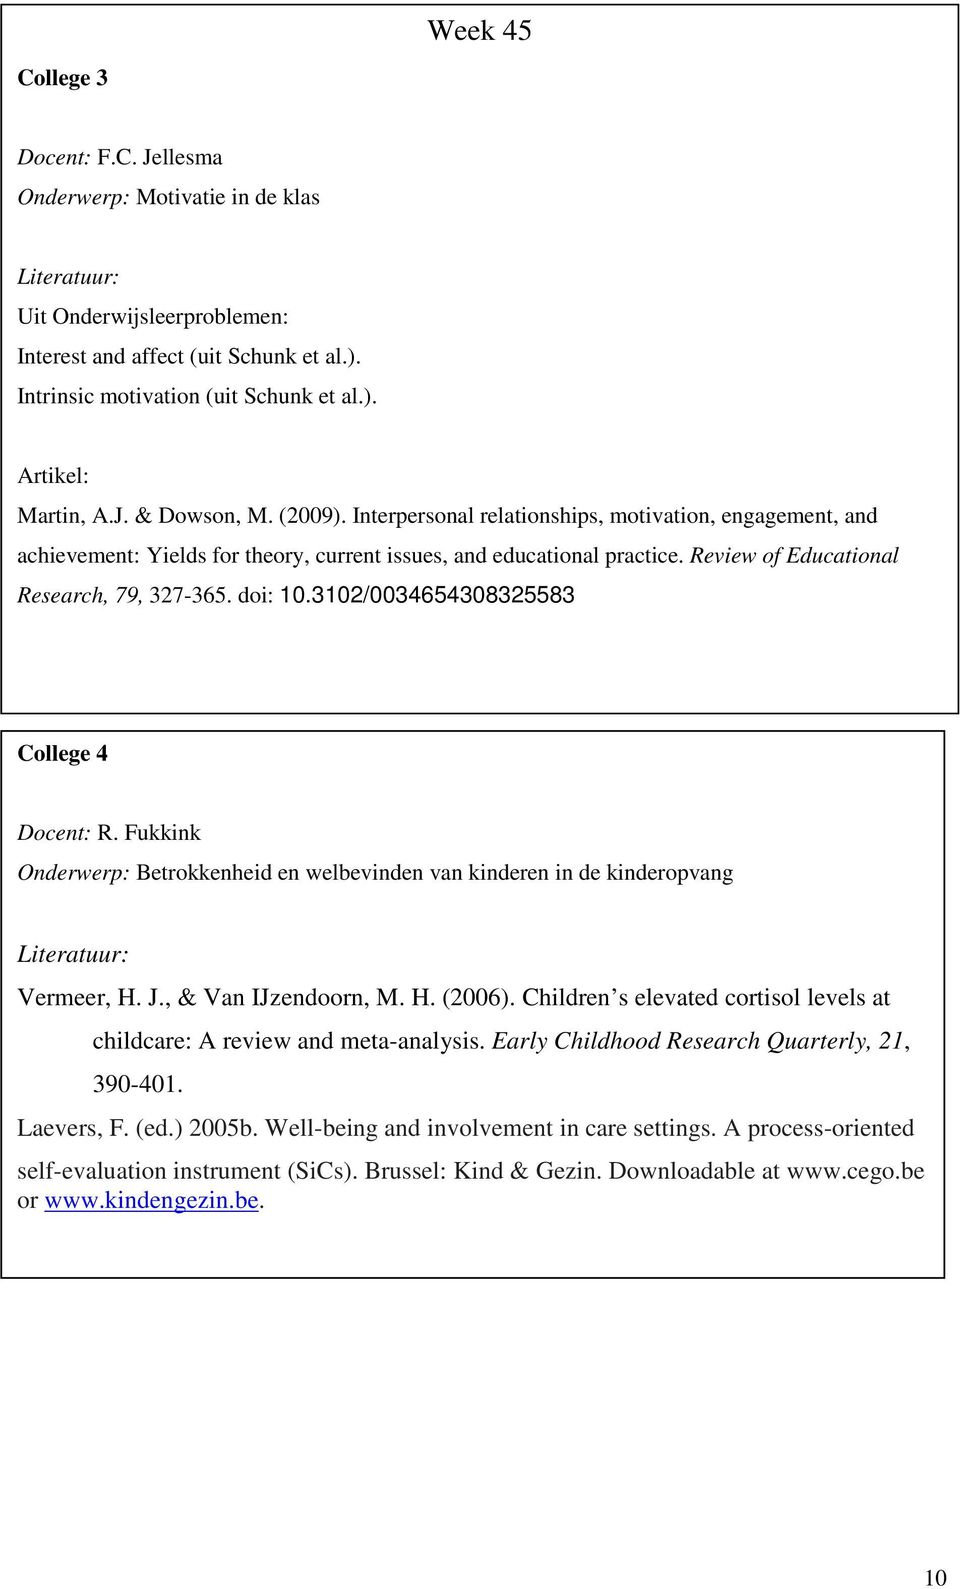 doi: 10.3102/0034654308325583 College 4 Docent: R. Fukkink Onderwerp: Betrokkenheid en welbevinden van kinderen in de kinderopvang Vermeer, H. J., & Van IJzendoorn, M. H. (2006).